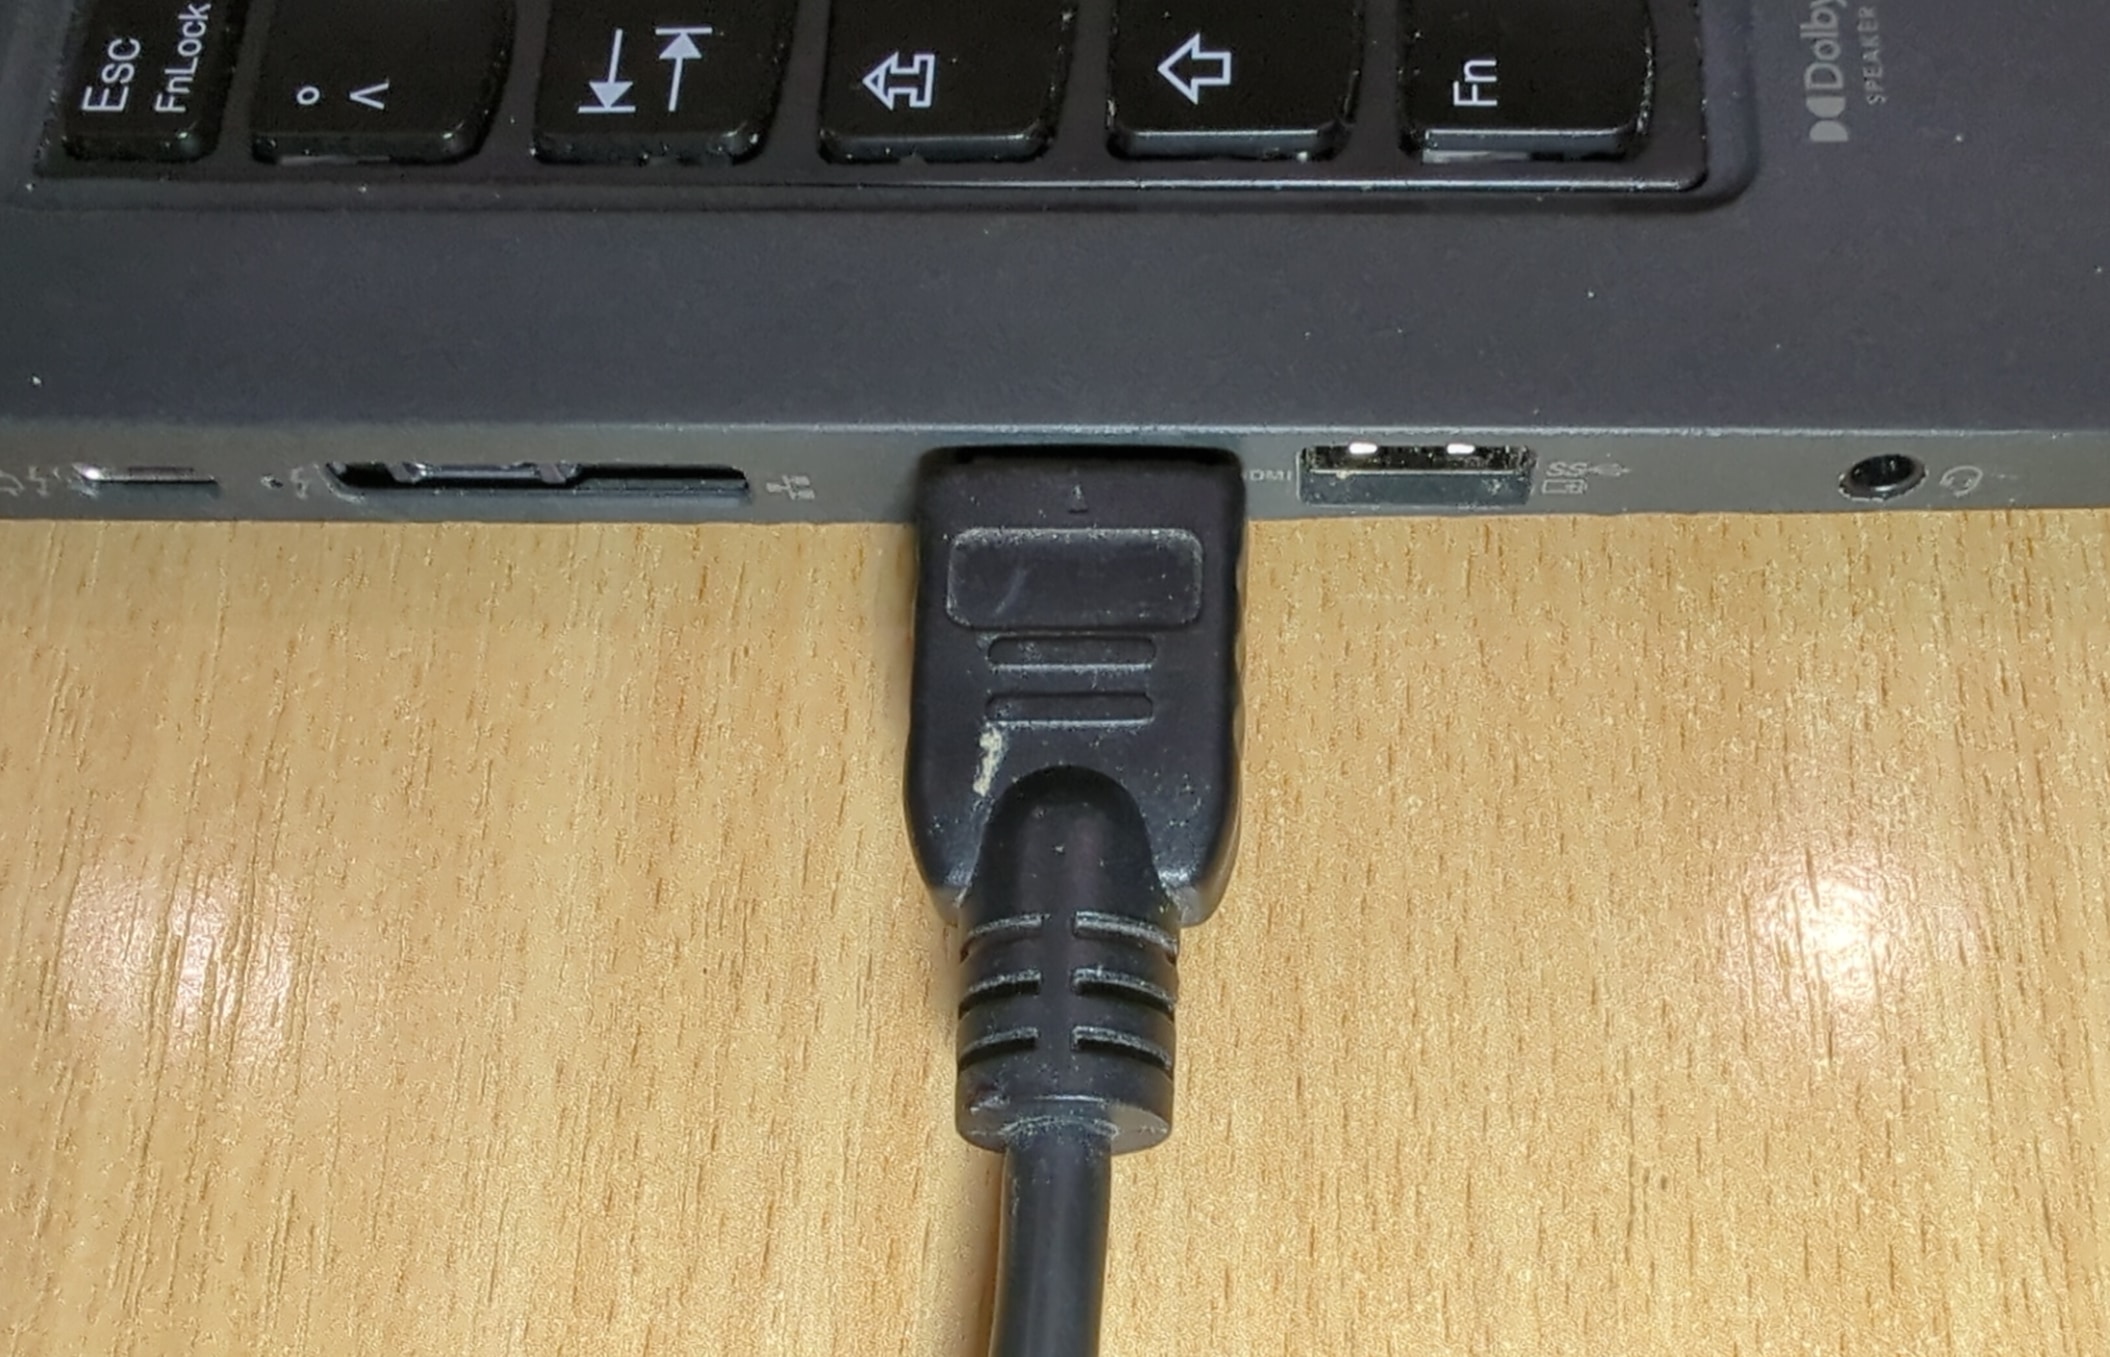 HDMIабель що підключено до ноутбука (буде розпізнаватися як монітор у системі).